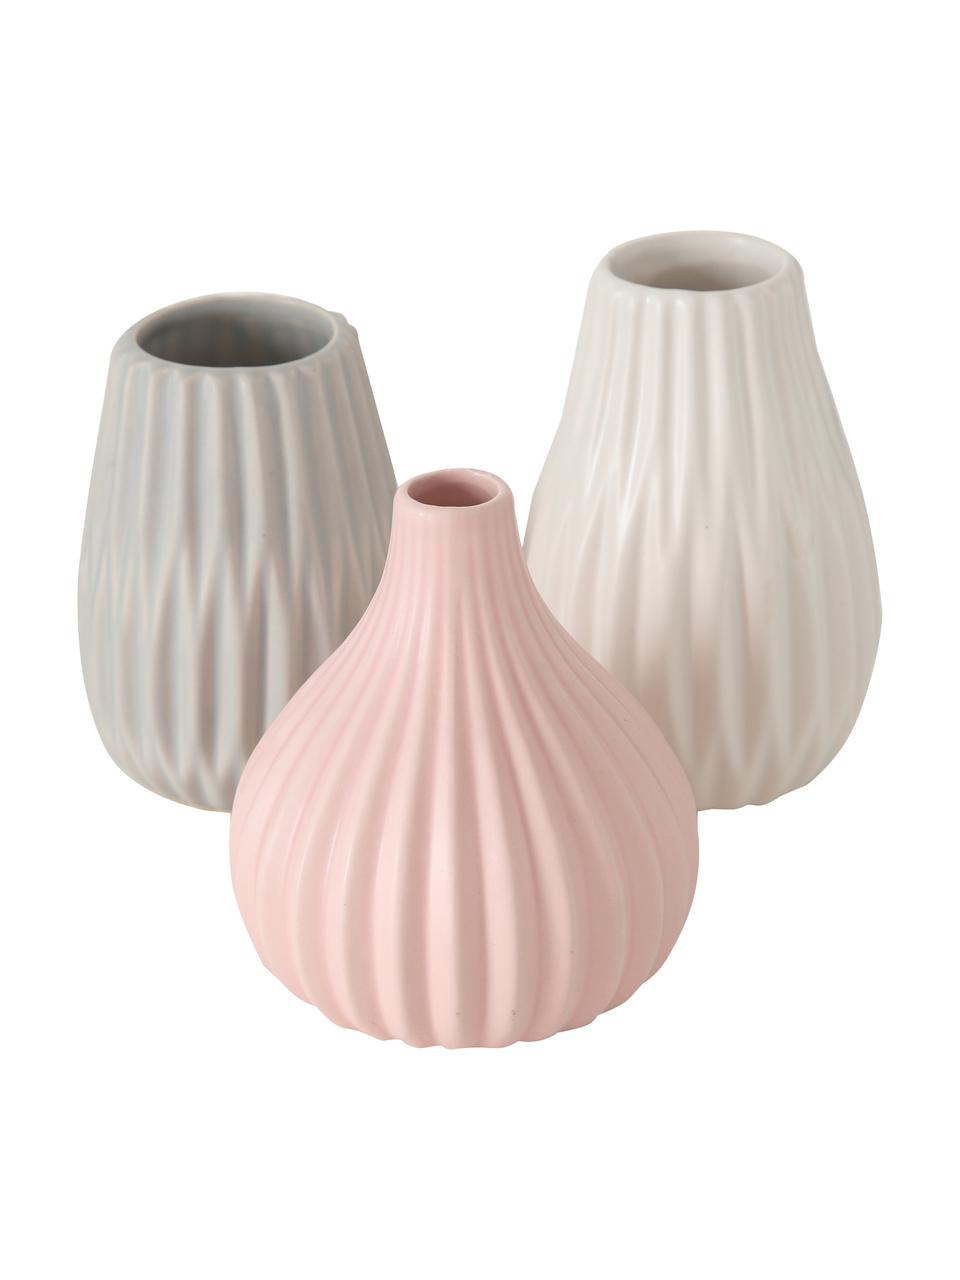 Petit vase Wilma, 3 élém., Grès cérame, Gris, blanc, rose, Lot de différentes tailles